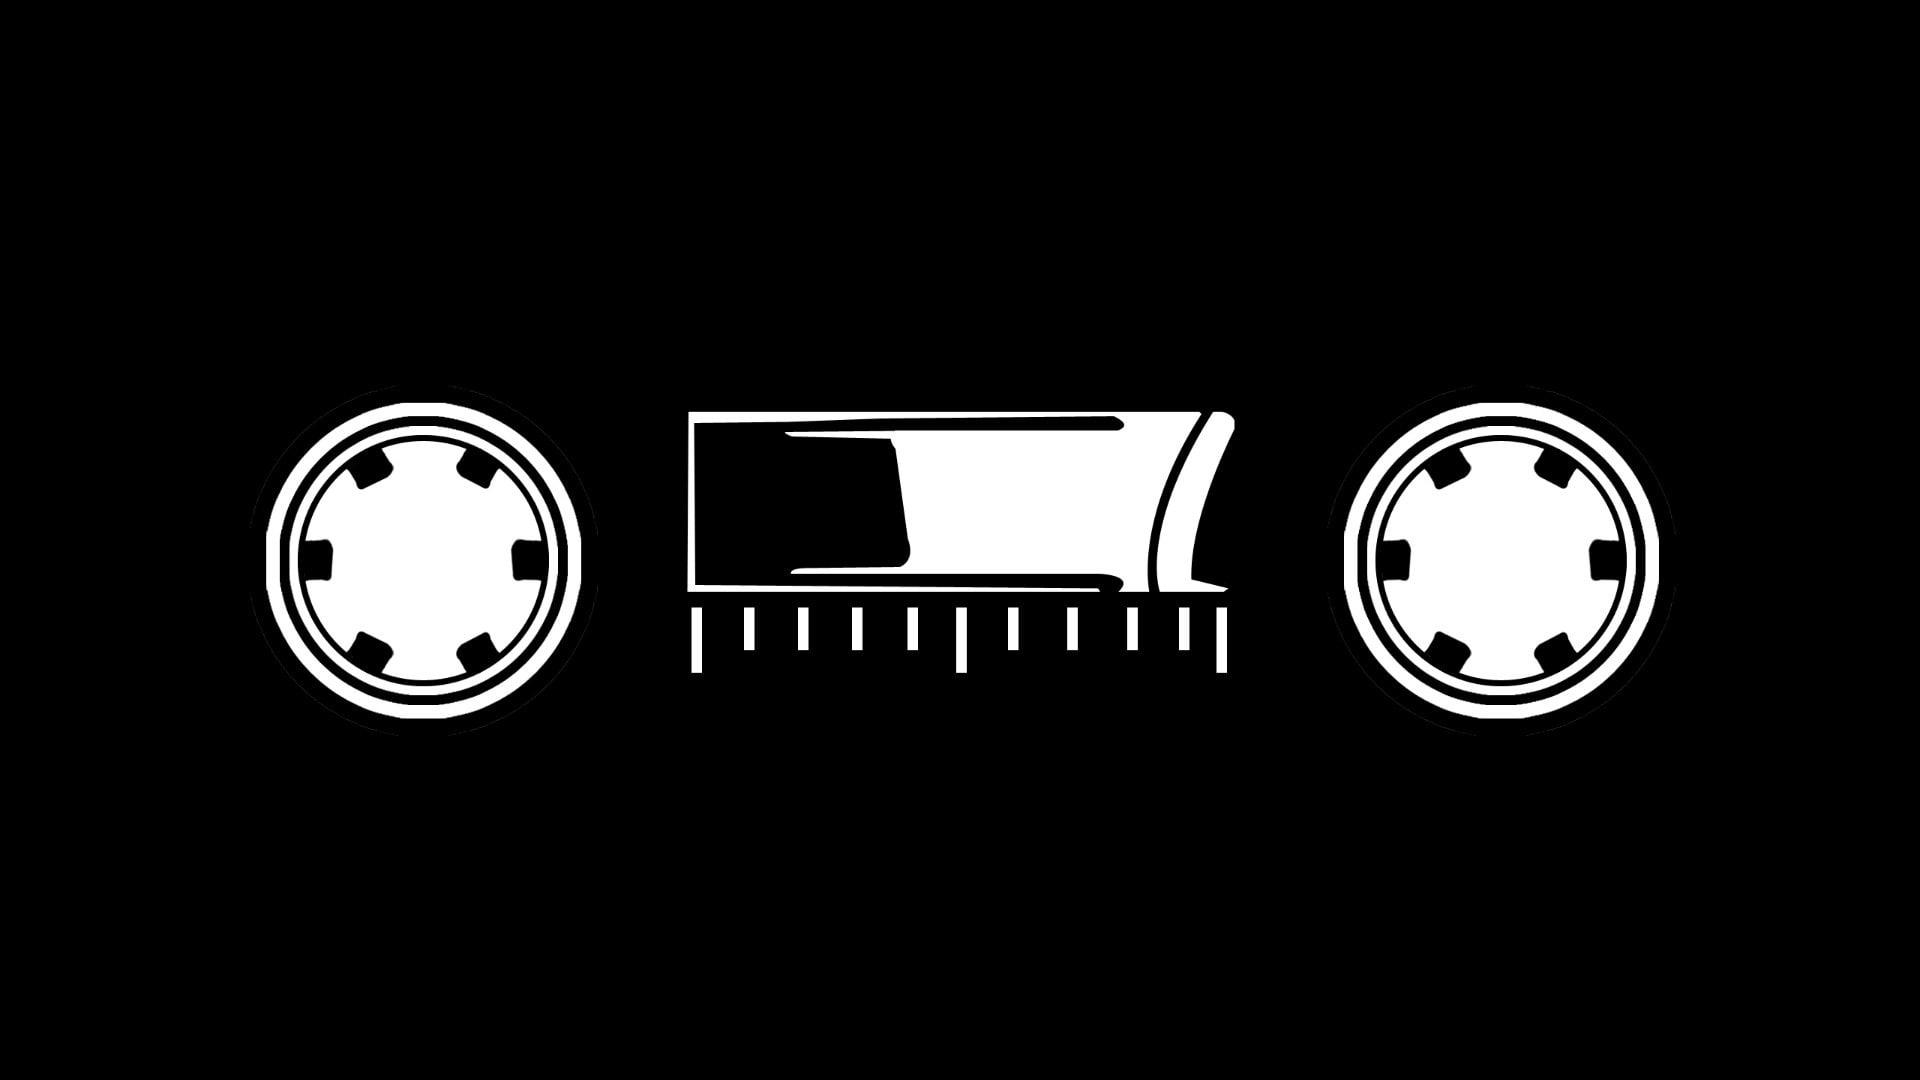 Cassette Logo - HD wallpaper: black cassette tape illustration, logo, bones, tracker